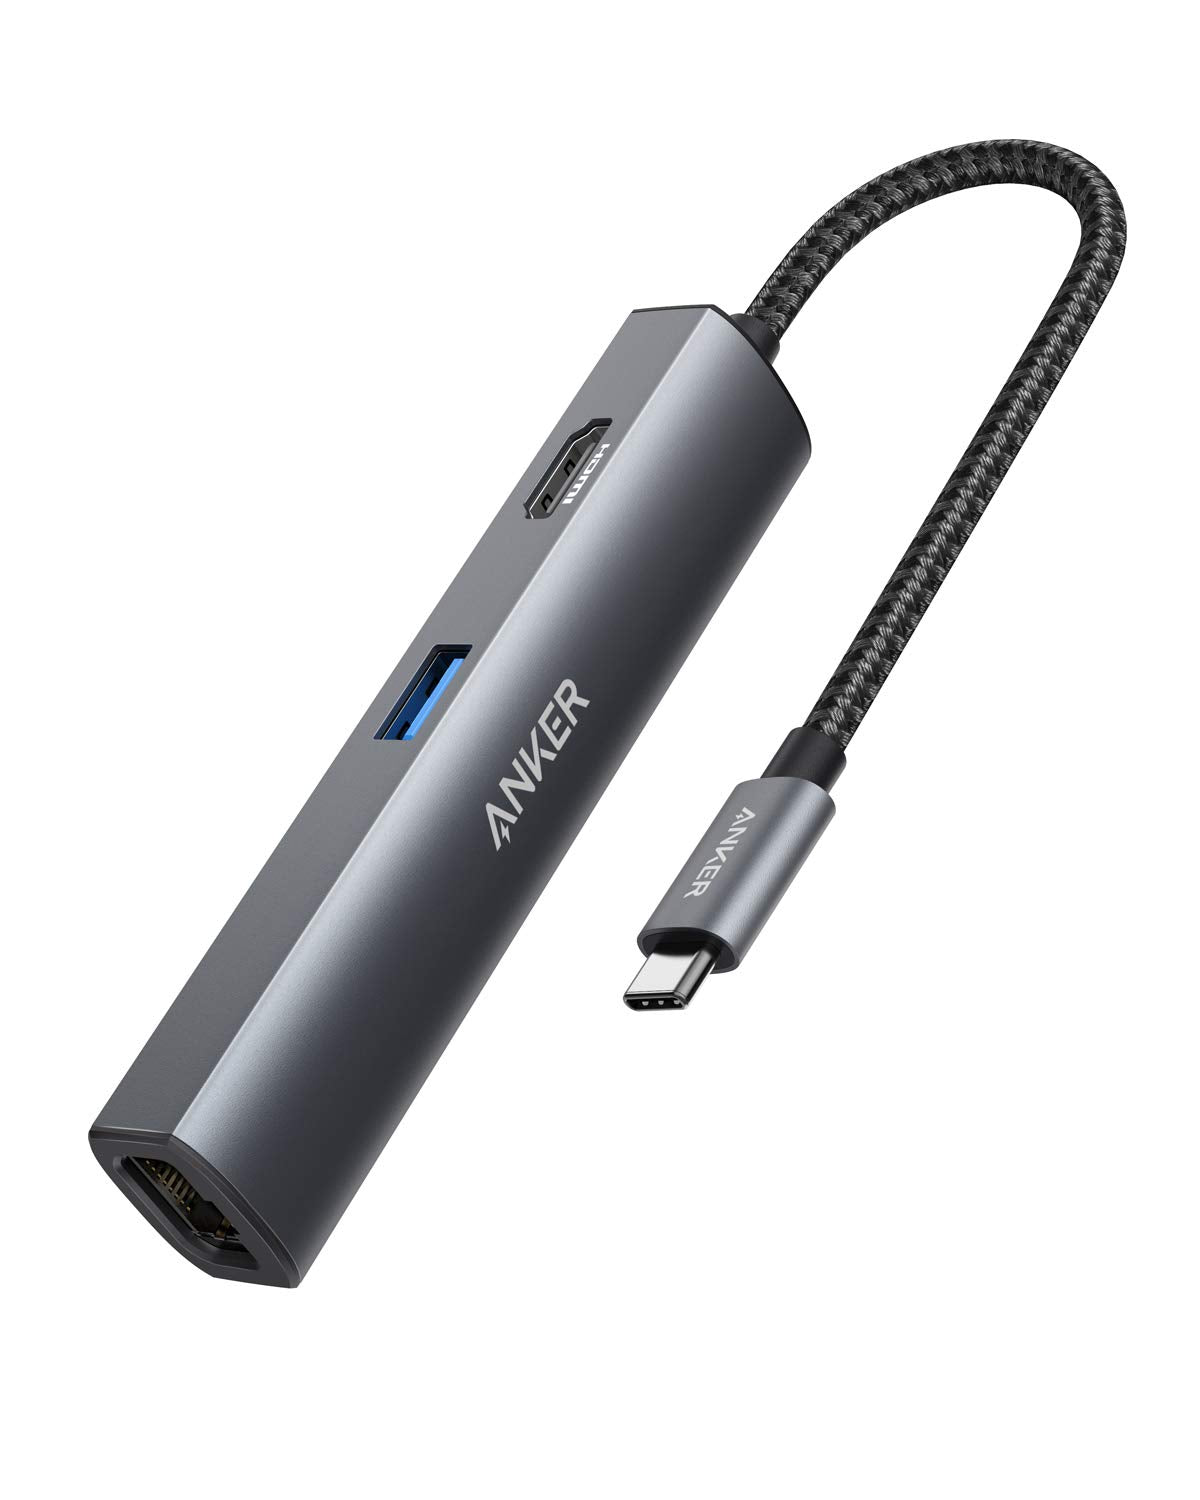 Anker 533 USB-C Hub (5-in-1, Slim) - Anker US